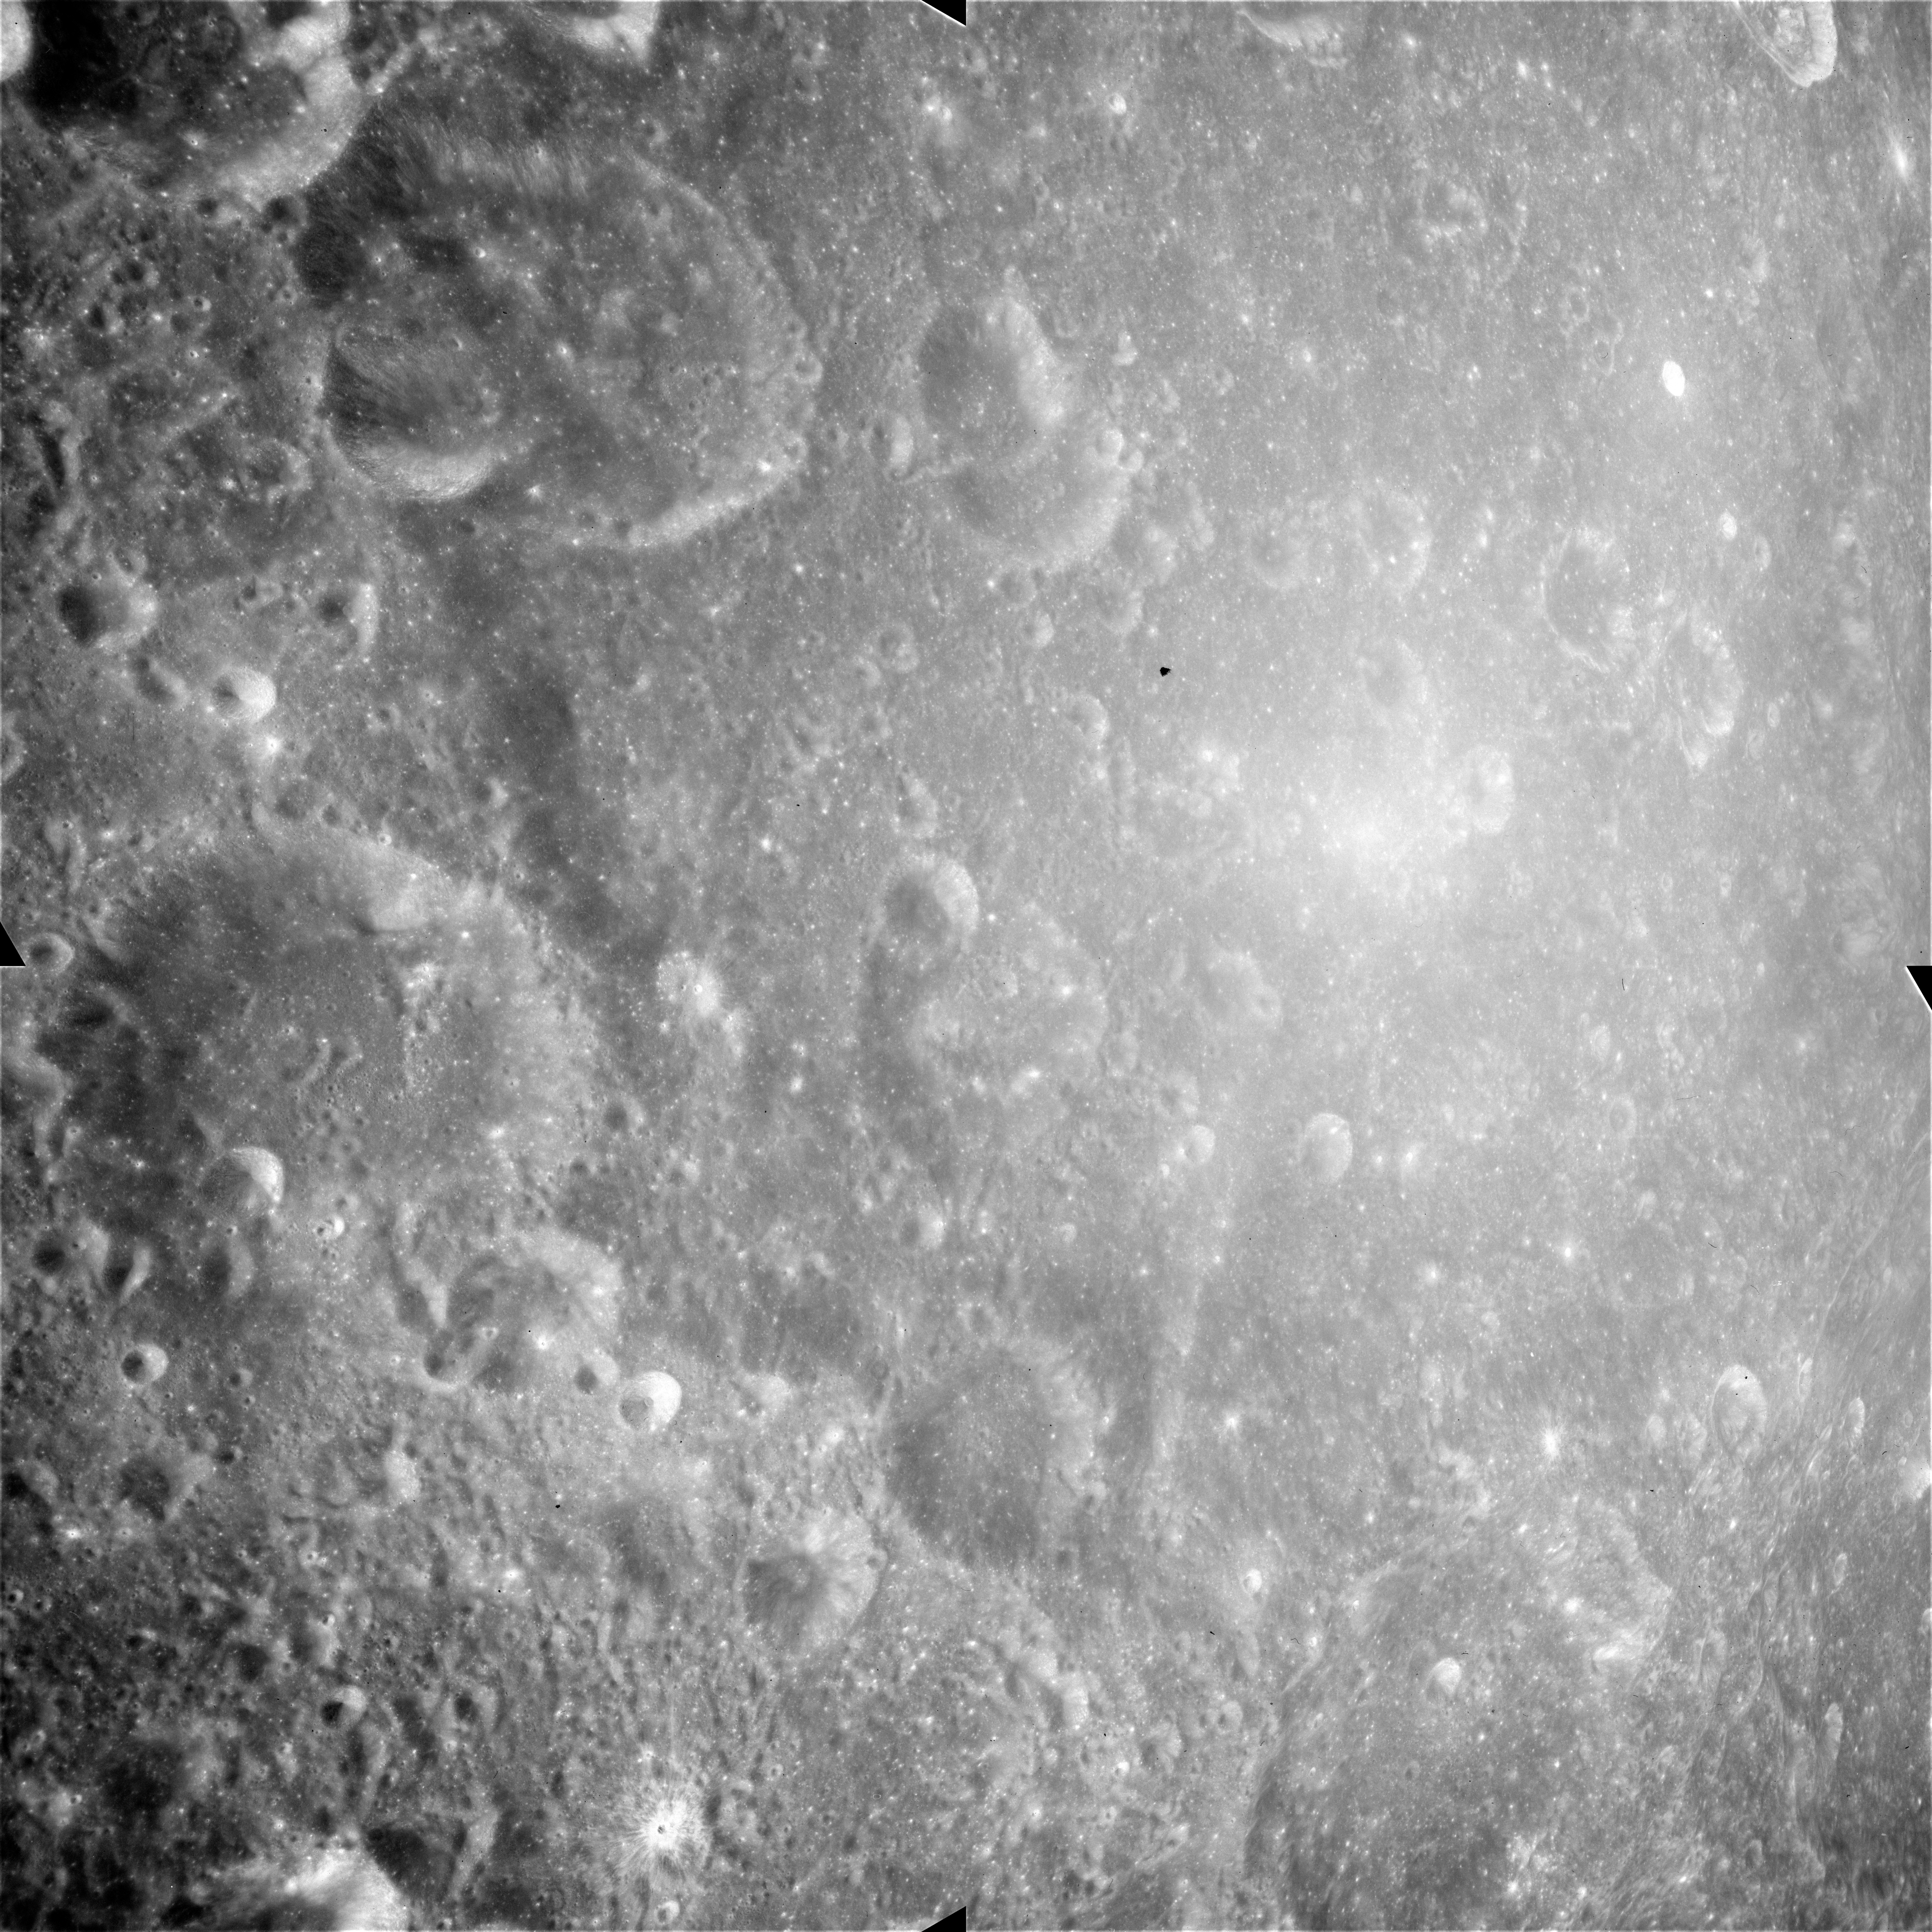 View Apollo Image AS15-M-1346